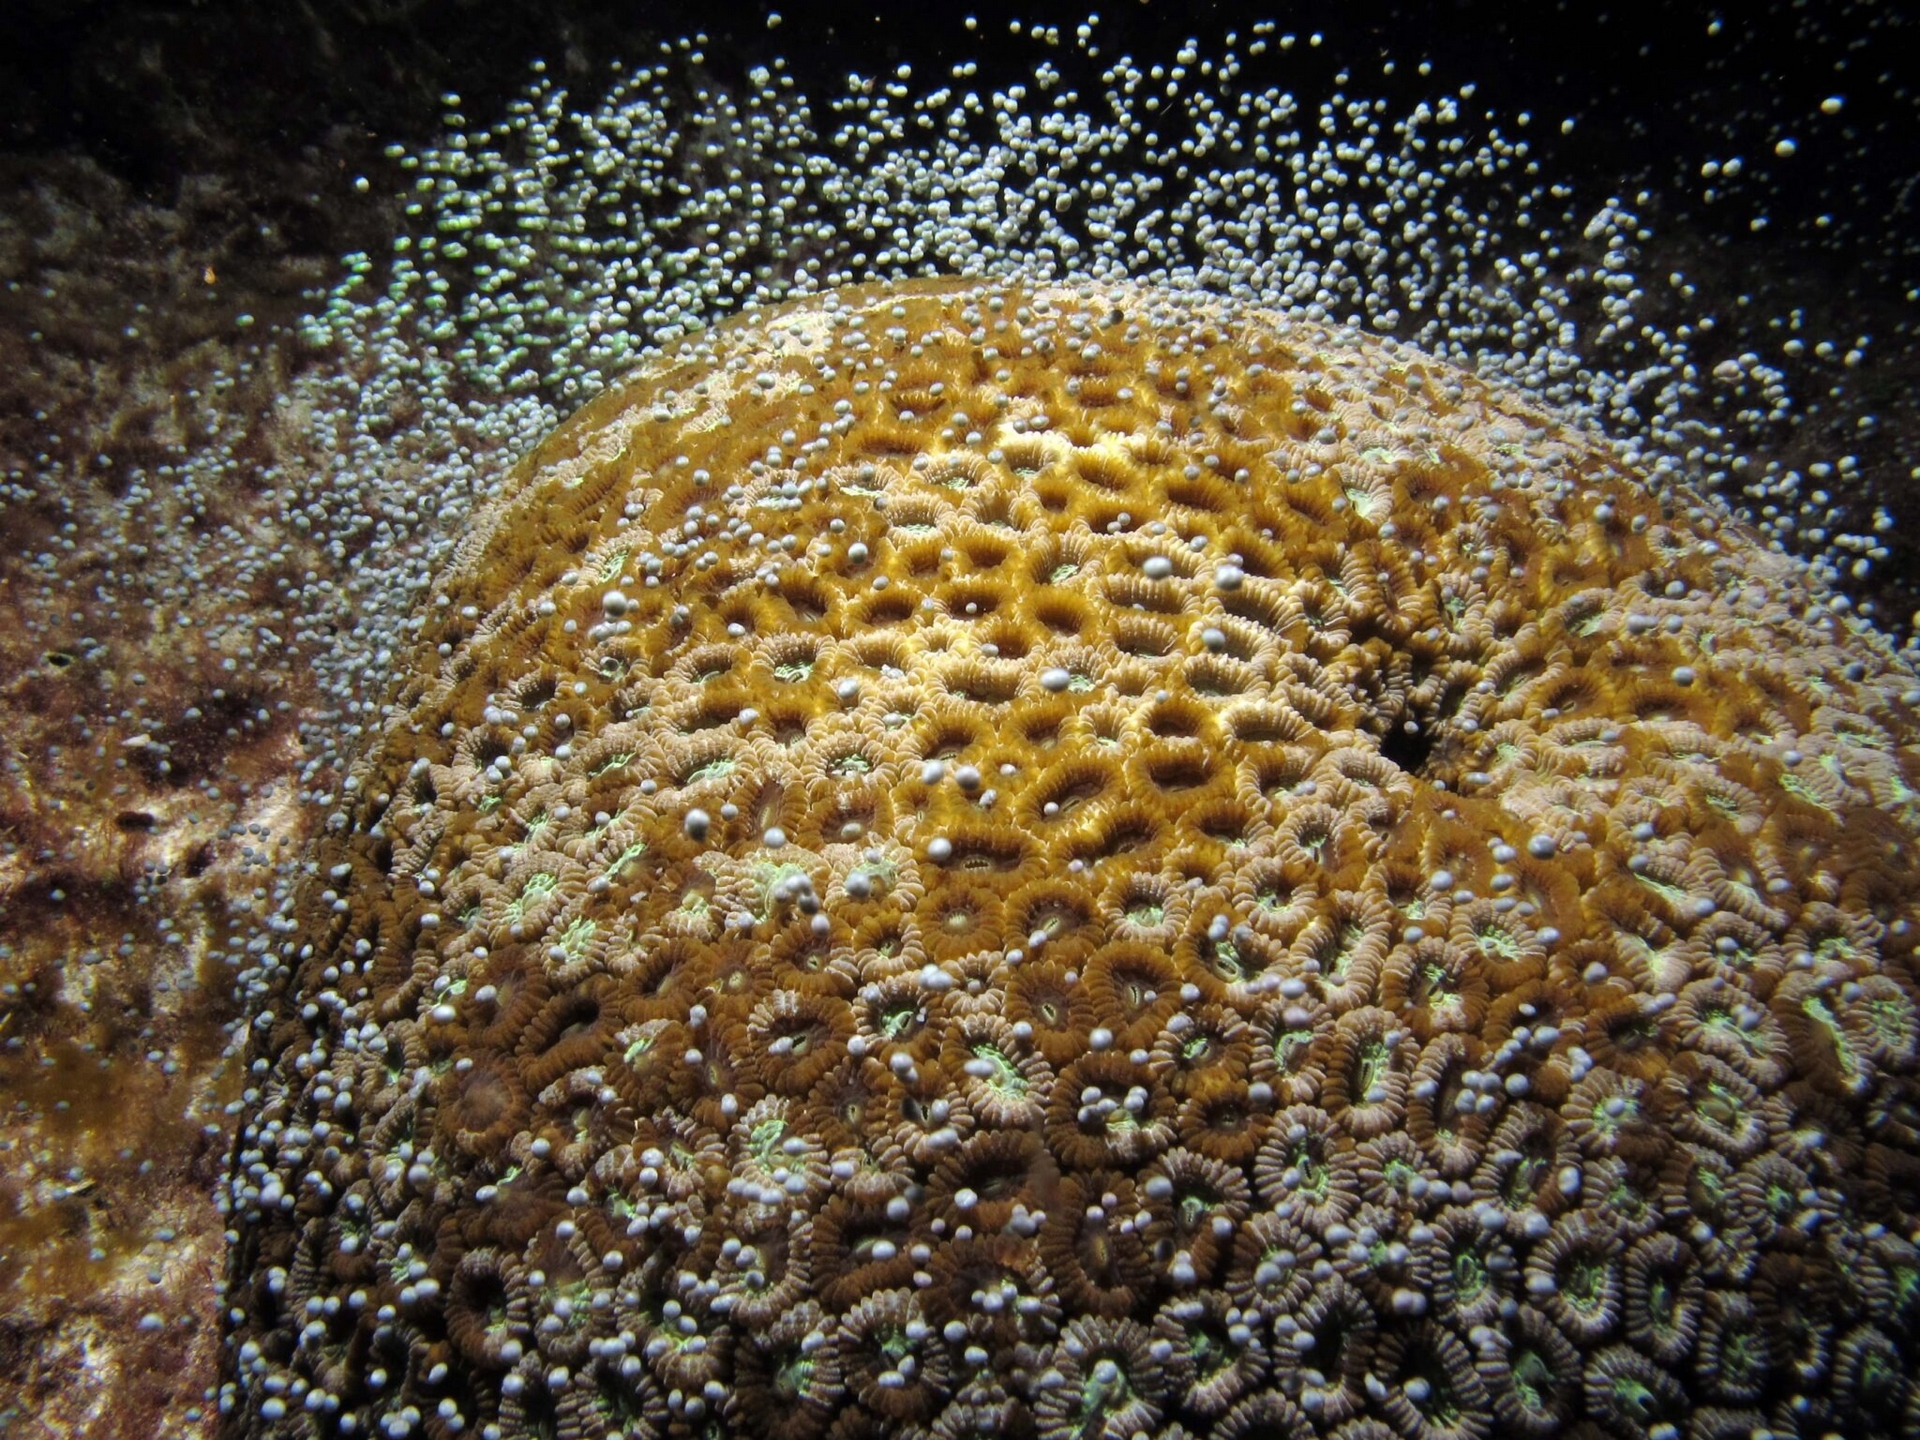 野澤洋耕的團隊在臺灣綠島進行長期觀察和研究，終於發現珊瑚同步產卵的關鍵因素。珊瑚繁殖季（南臺灣約 4-6 月）滿月過後，日落到月昇之間的黑暗期觸發了珊瑚產卵的條件。圖片為正在產卵的環菊珊瑚。 圖│林哲宏 